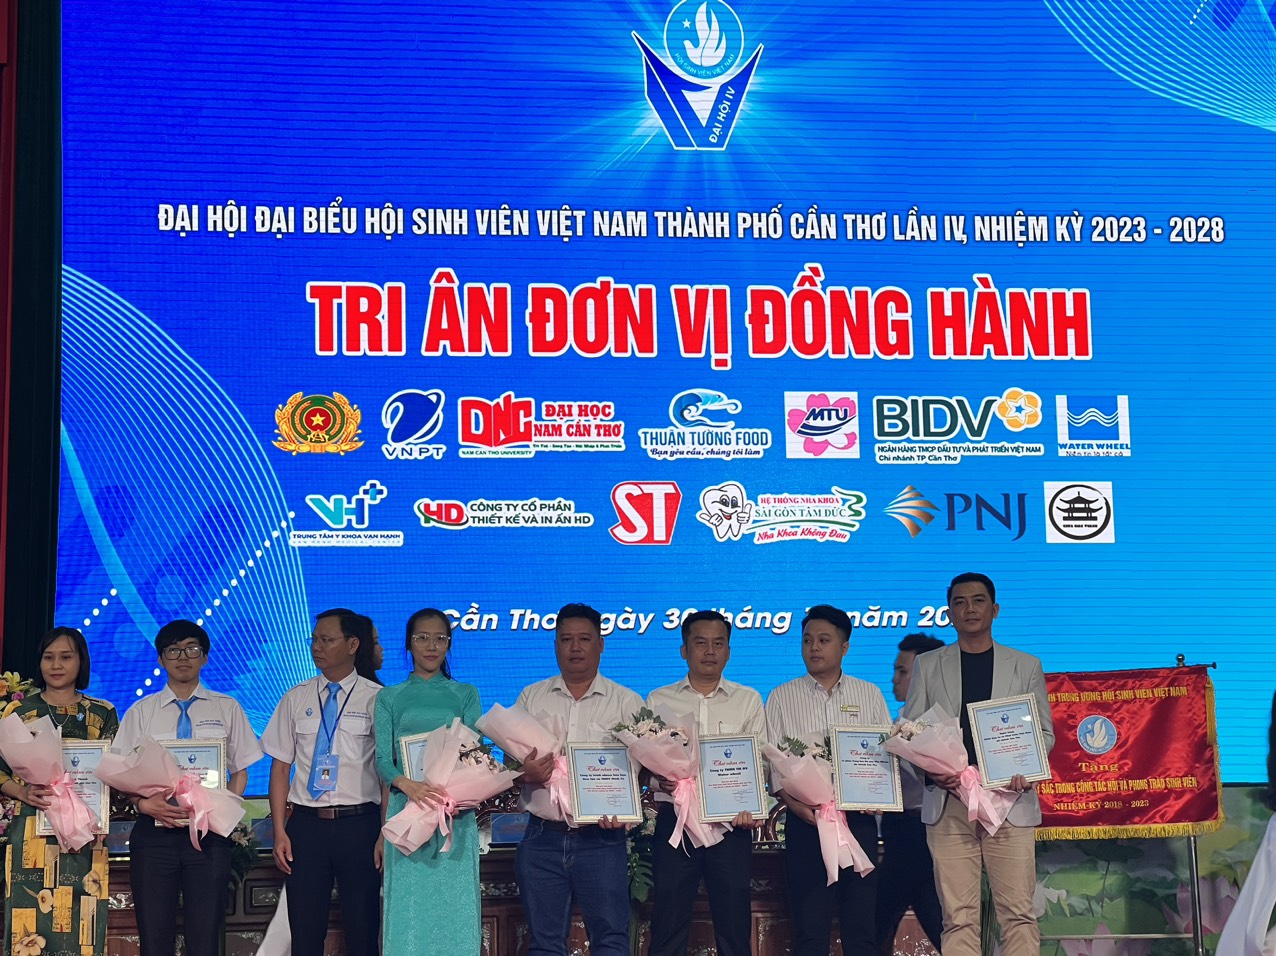 Thuận Tường Food tại Đại Hội Đại Biểu Hội Sinh Viên VIệt Nam Thành Phố Cần Thơ Lần IV, Nhiệm Kỳ 2023 - 2028